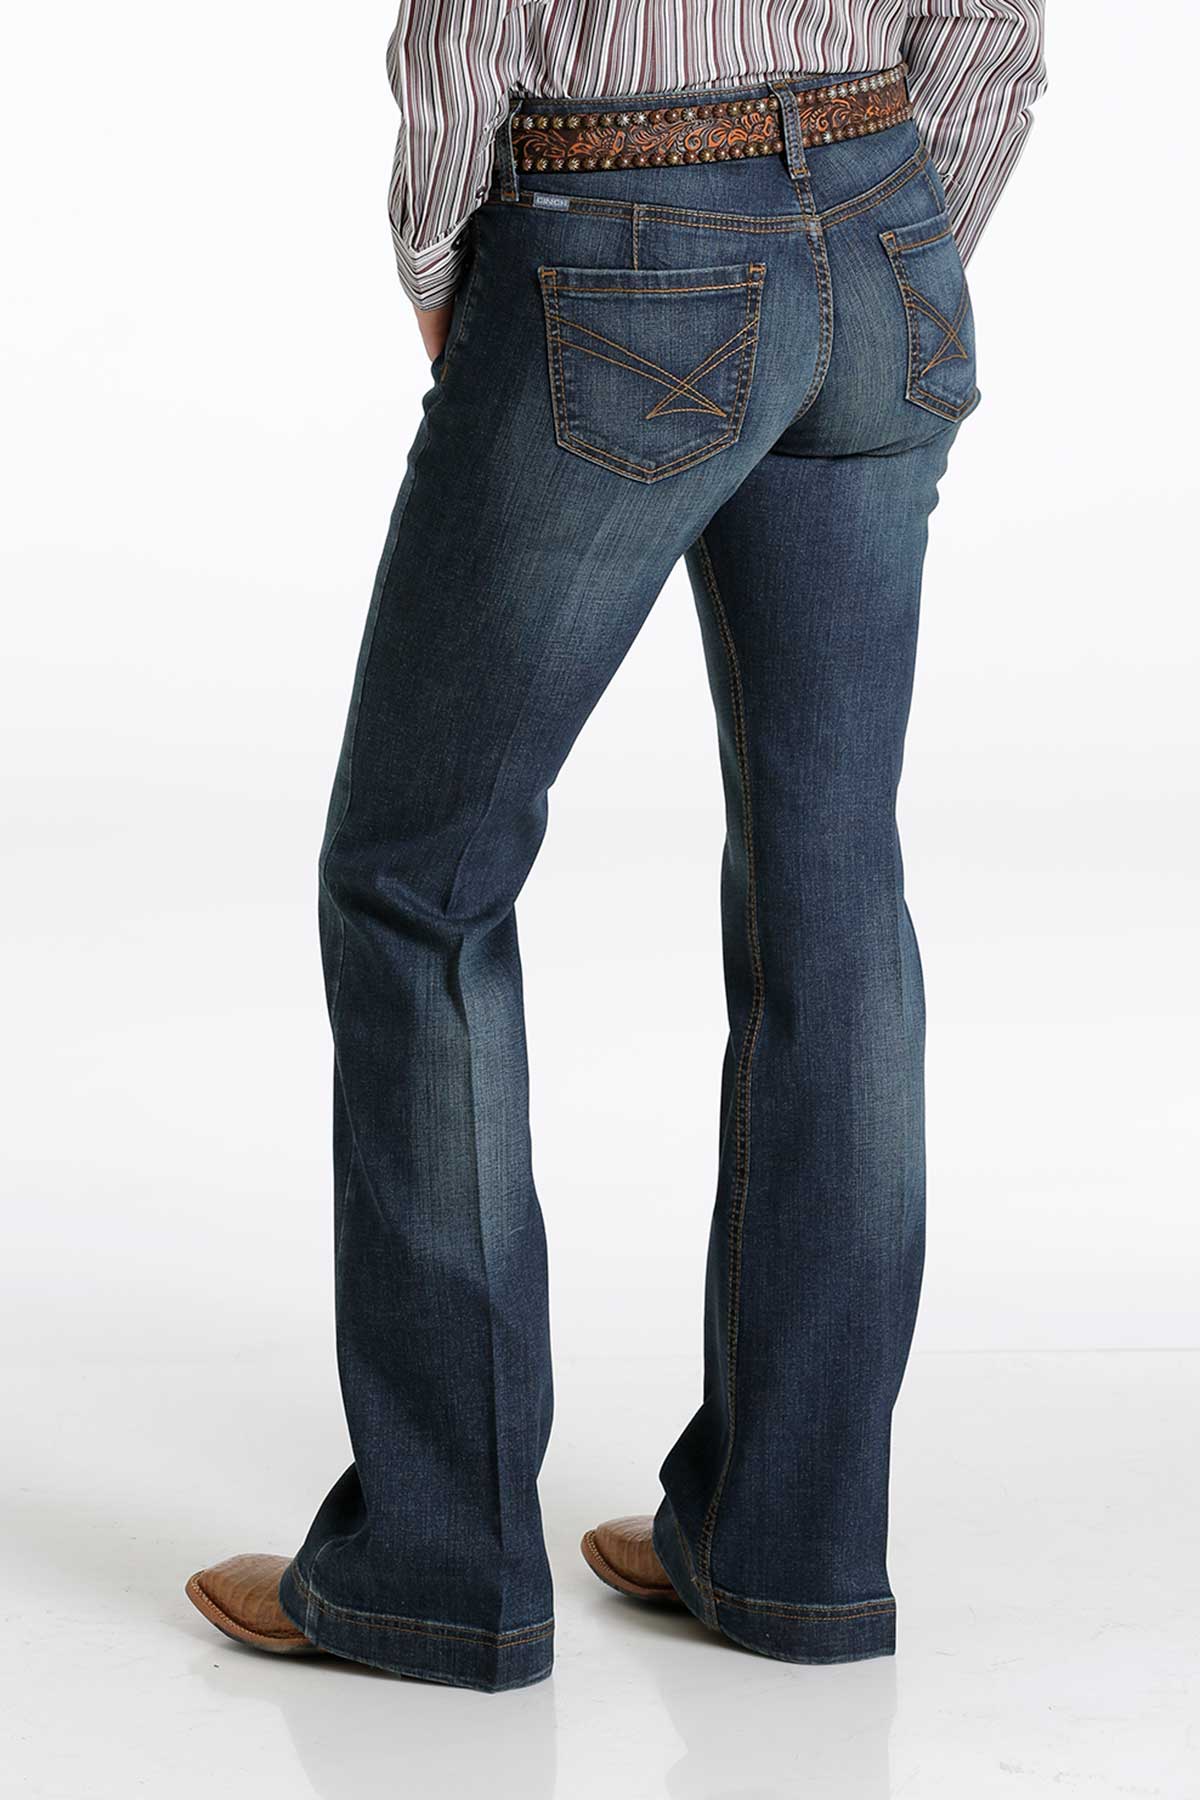 CINCH Women's Slim Fit 5-Pocket Lynden Trouser